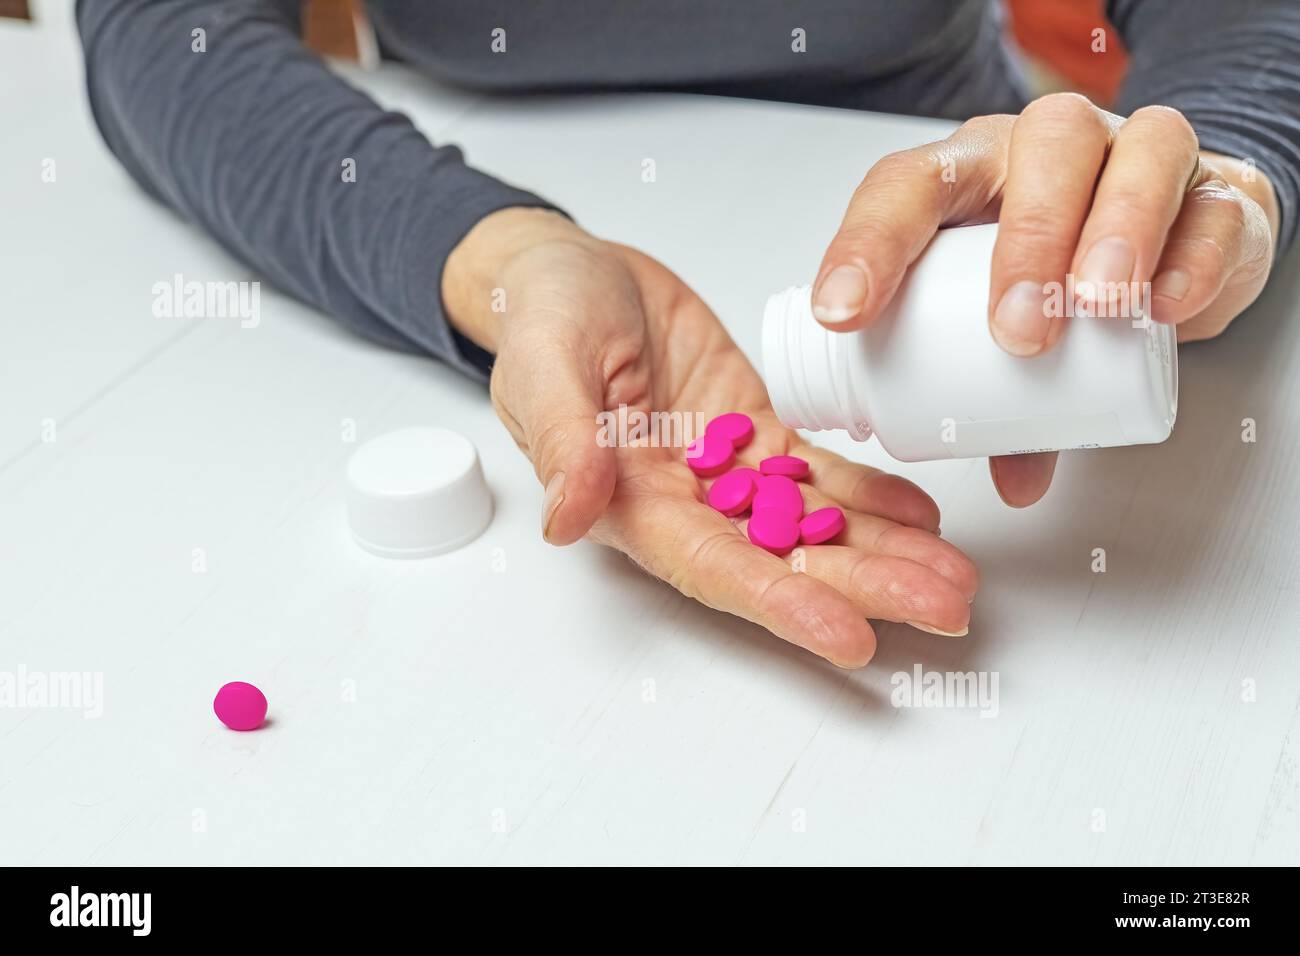 Santé et concept médical. La femme verse des médicaments dans sa main. Banque D'Images